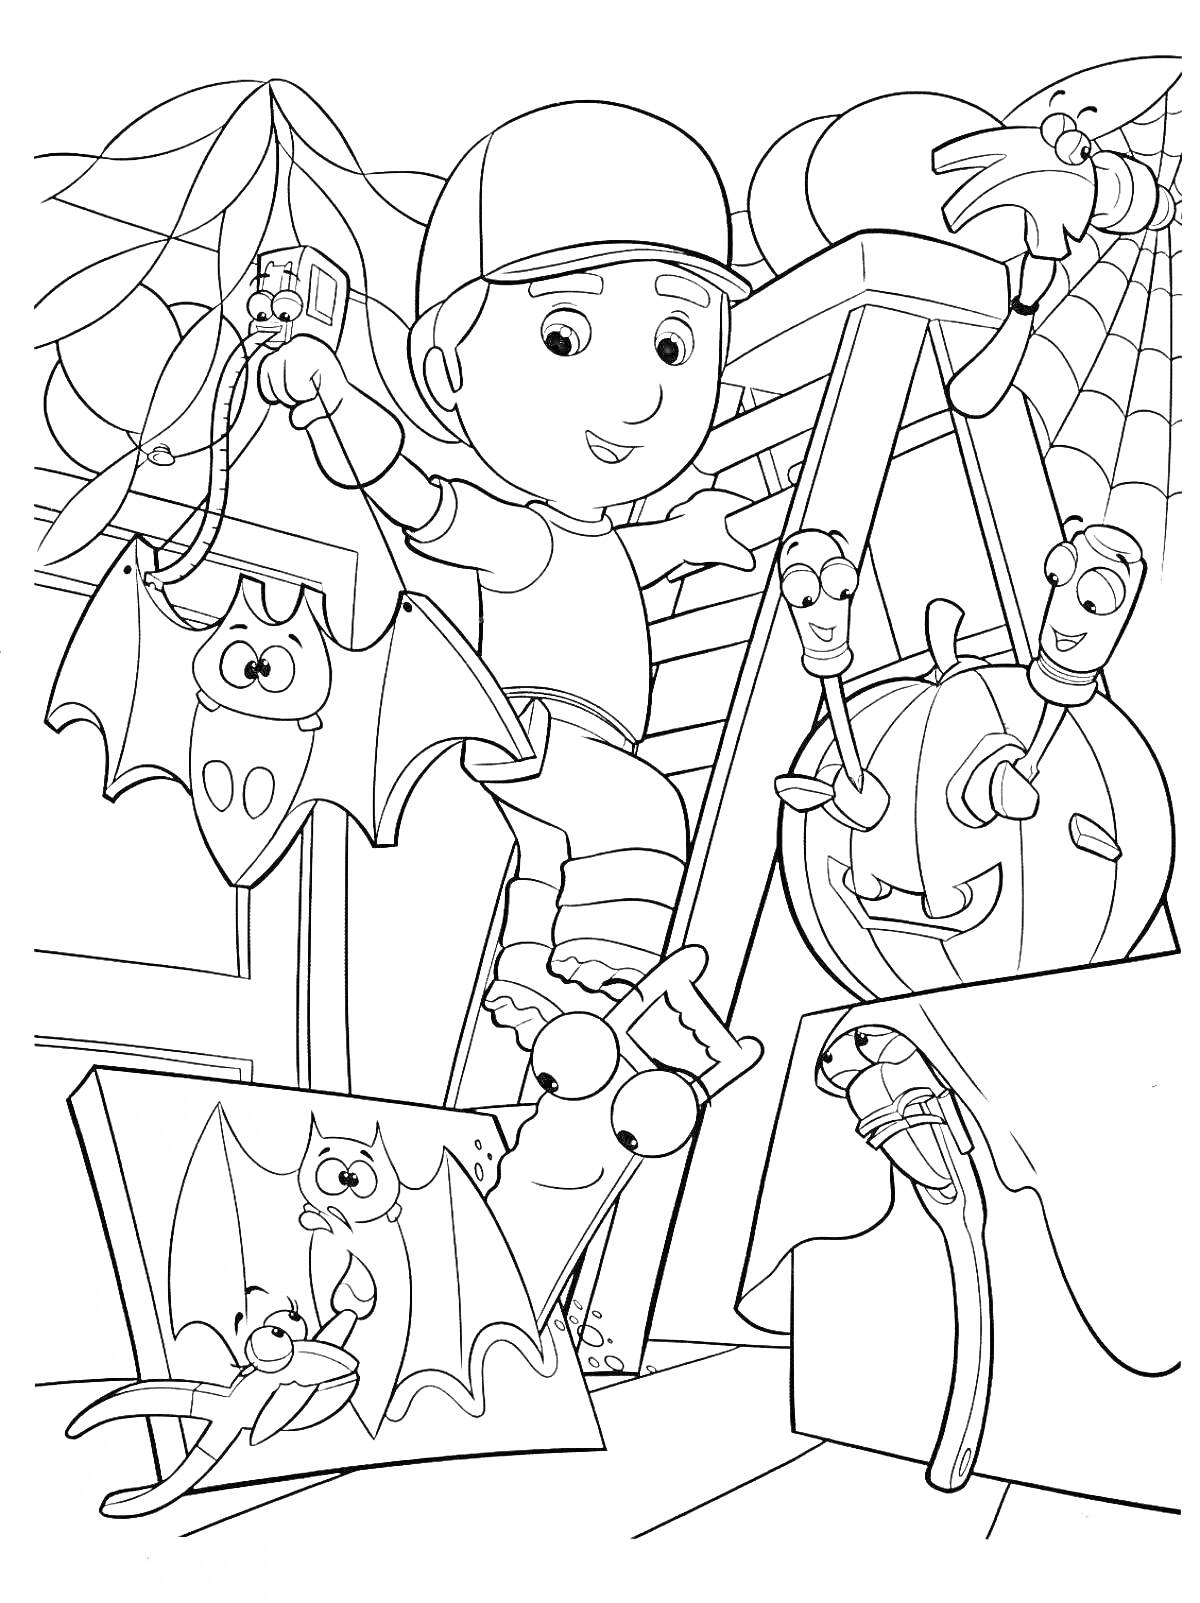 Умелец Мэнни украшает комнату для Хэллоуина с инструментами и летучими мышами